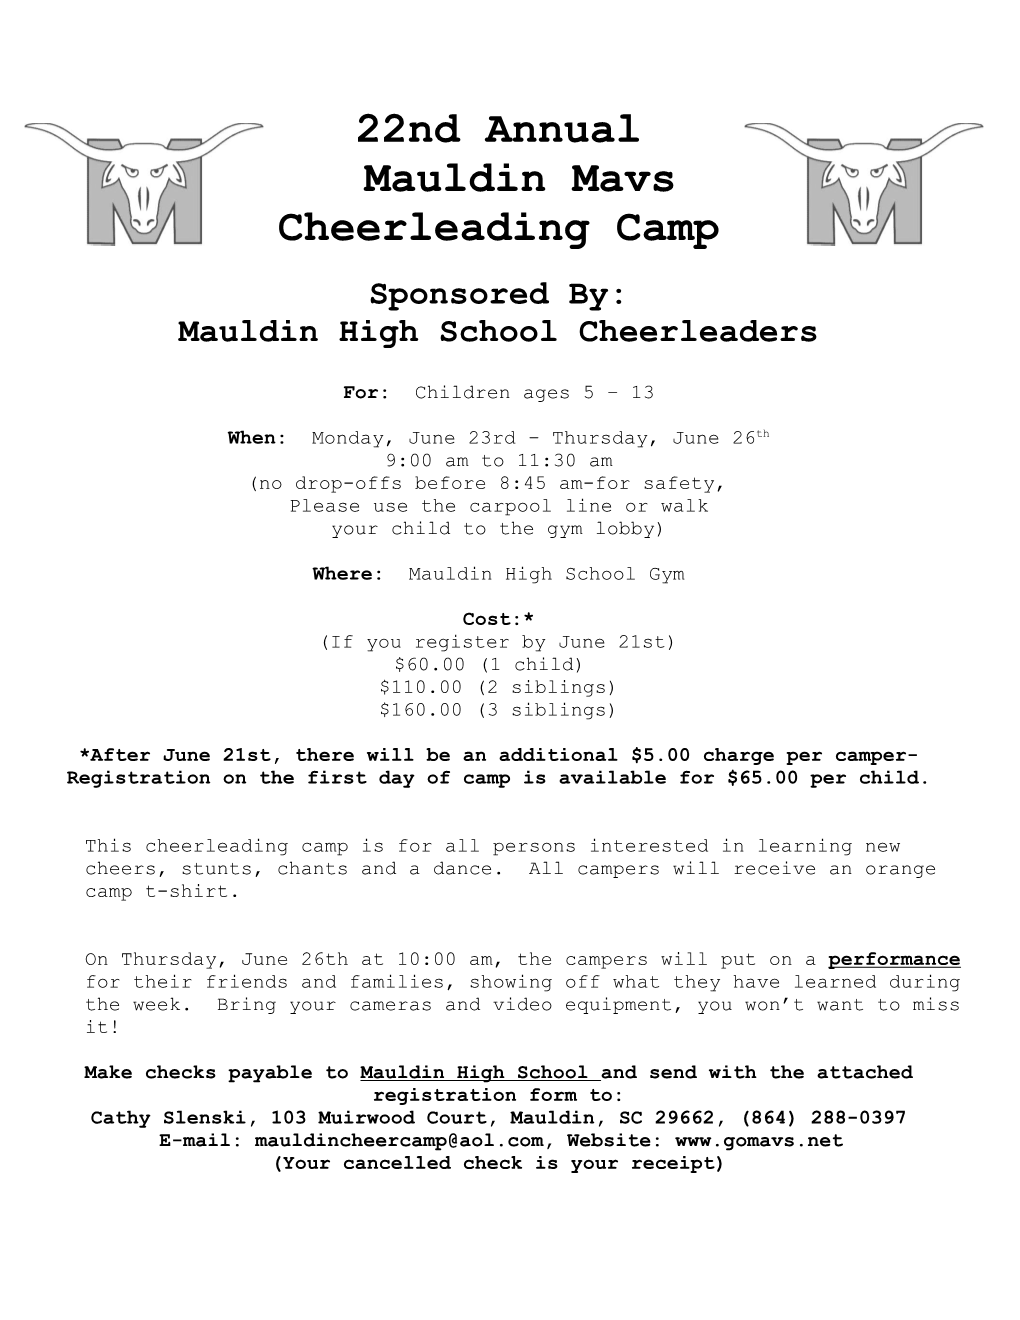 Mauldin High School Cheerleaders